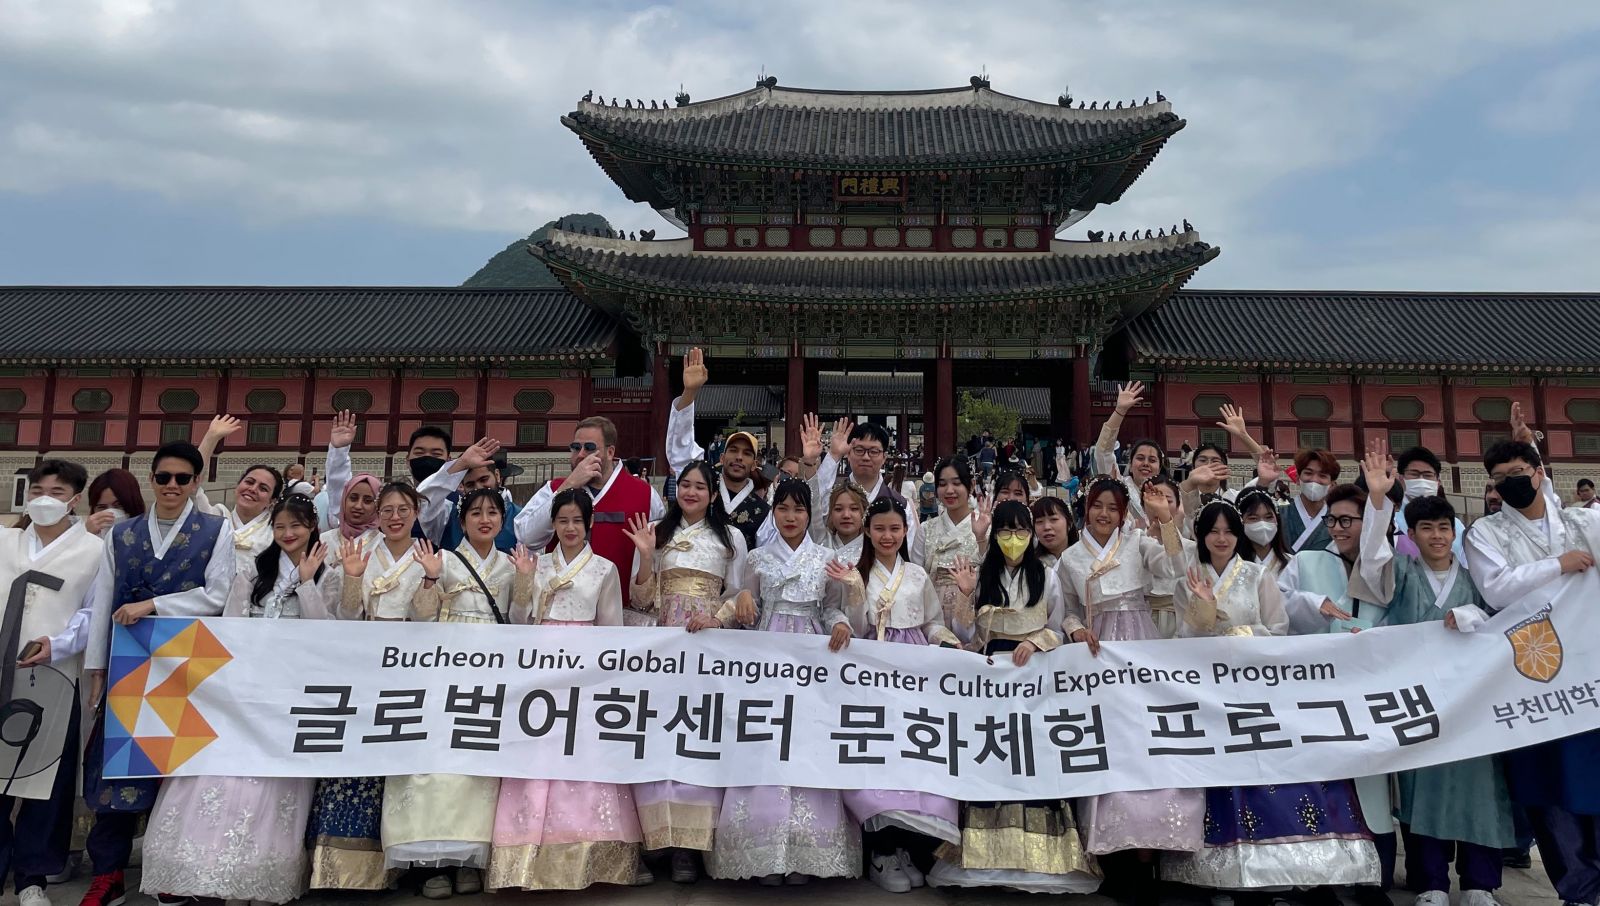 Chương trình trải nghiệm văn hoá Đại học Bucheon